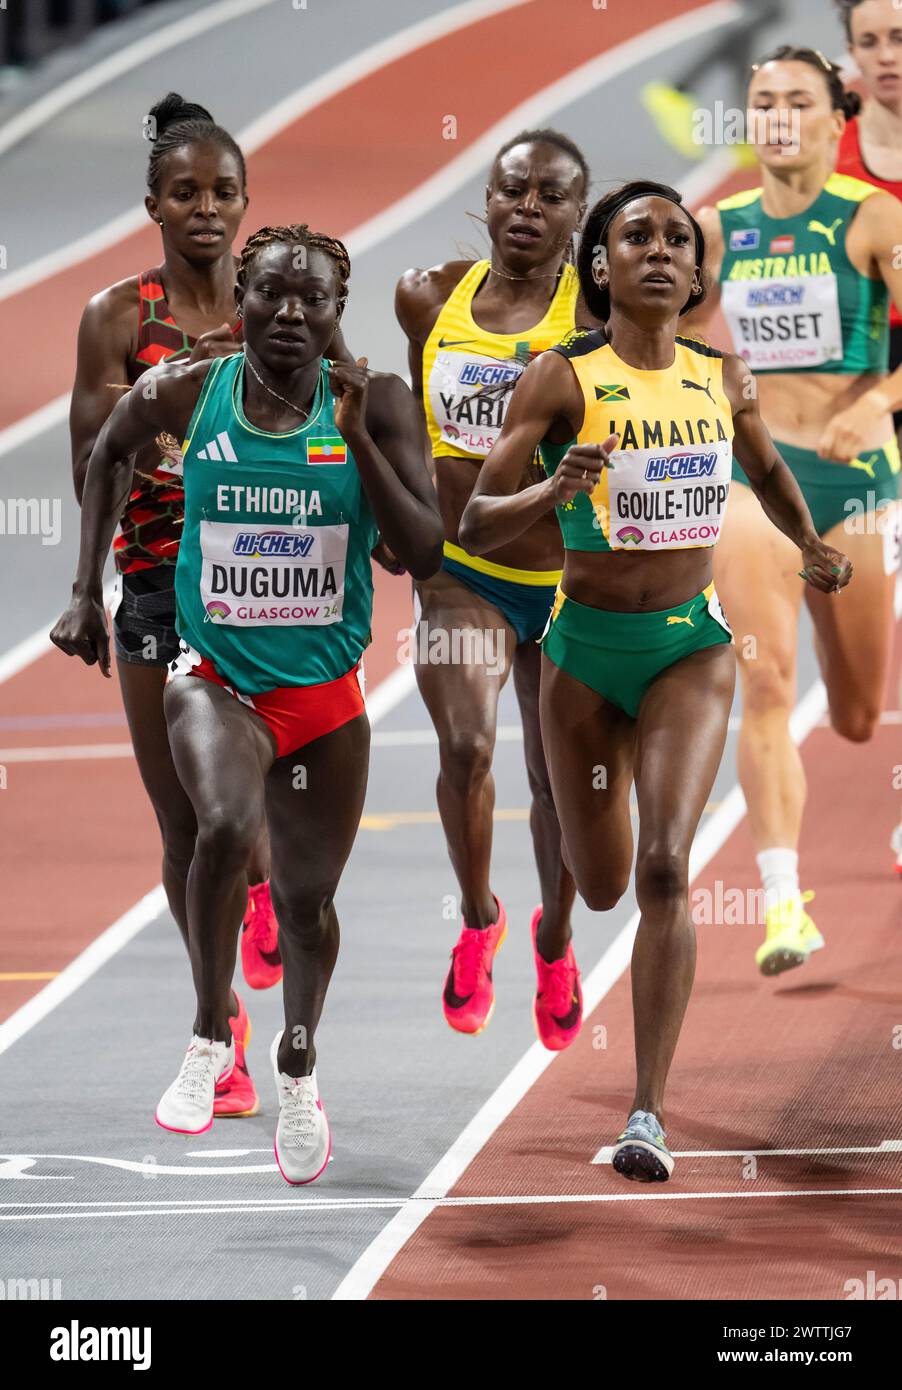 Tsige Duguma dell'Etiopia e Natoya Goule-Toppin della Giamaica gareggiano nei 800 metri di manche femminili ai Campionati del mondo di atletica indoor degli Emirati Arabi Foto Stock